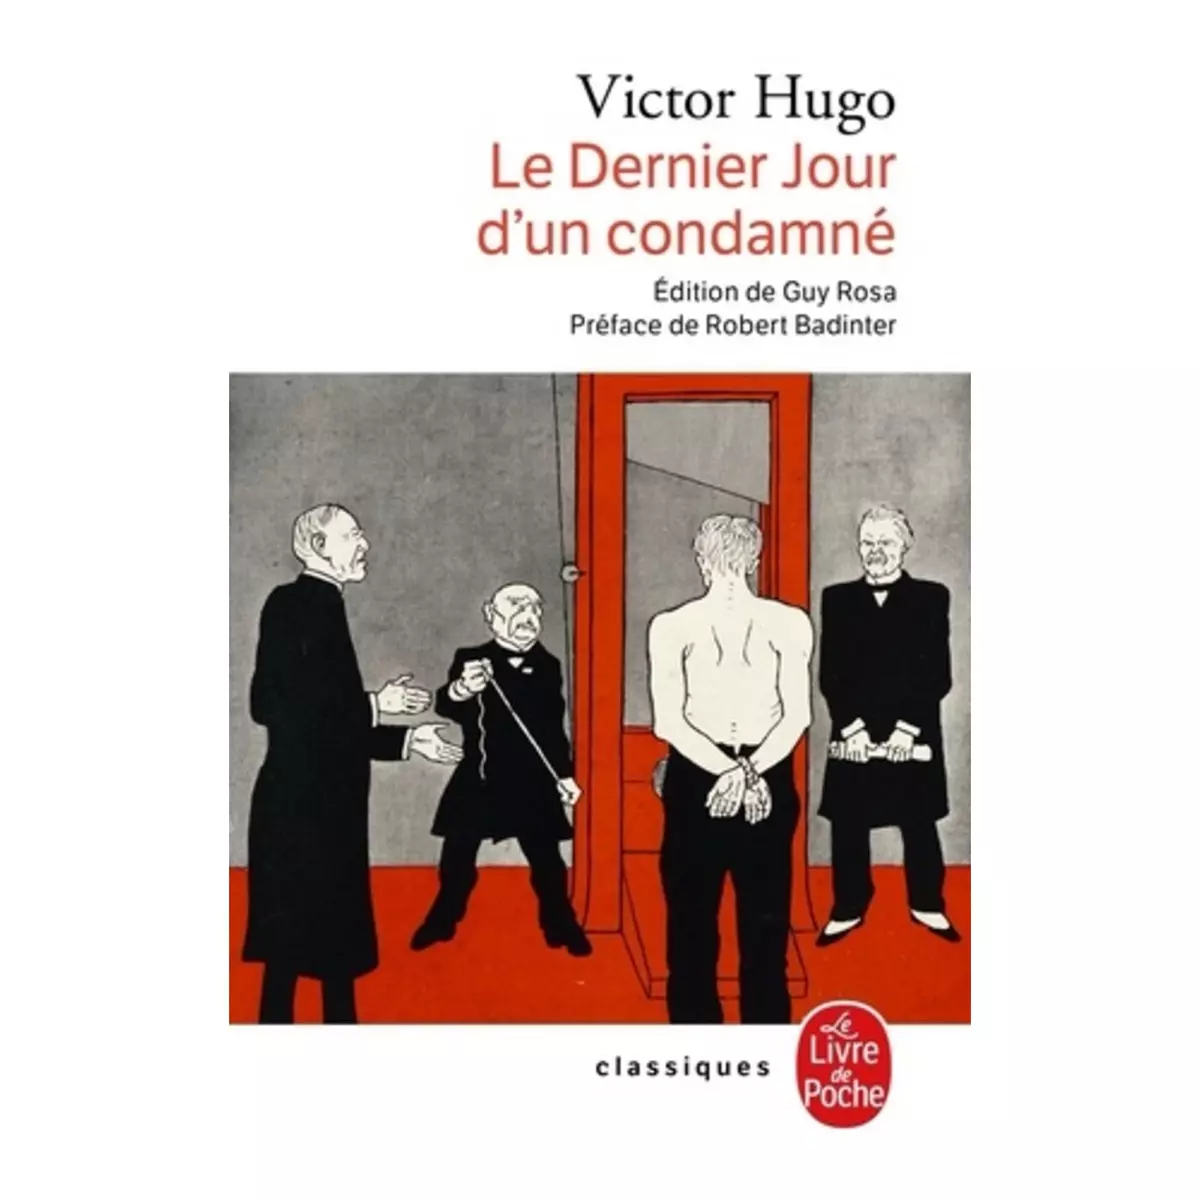  LE DERNIER JOUR D'UN CONDAMNE. SUIVI DE CLAUDE GUEUX. ET DE L'AFFAIRE TAPNER, Hugo Victor